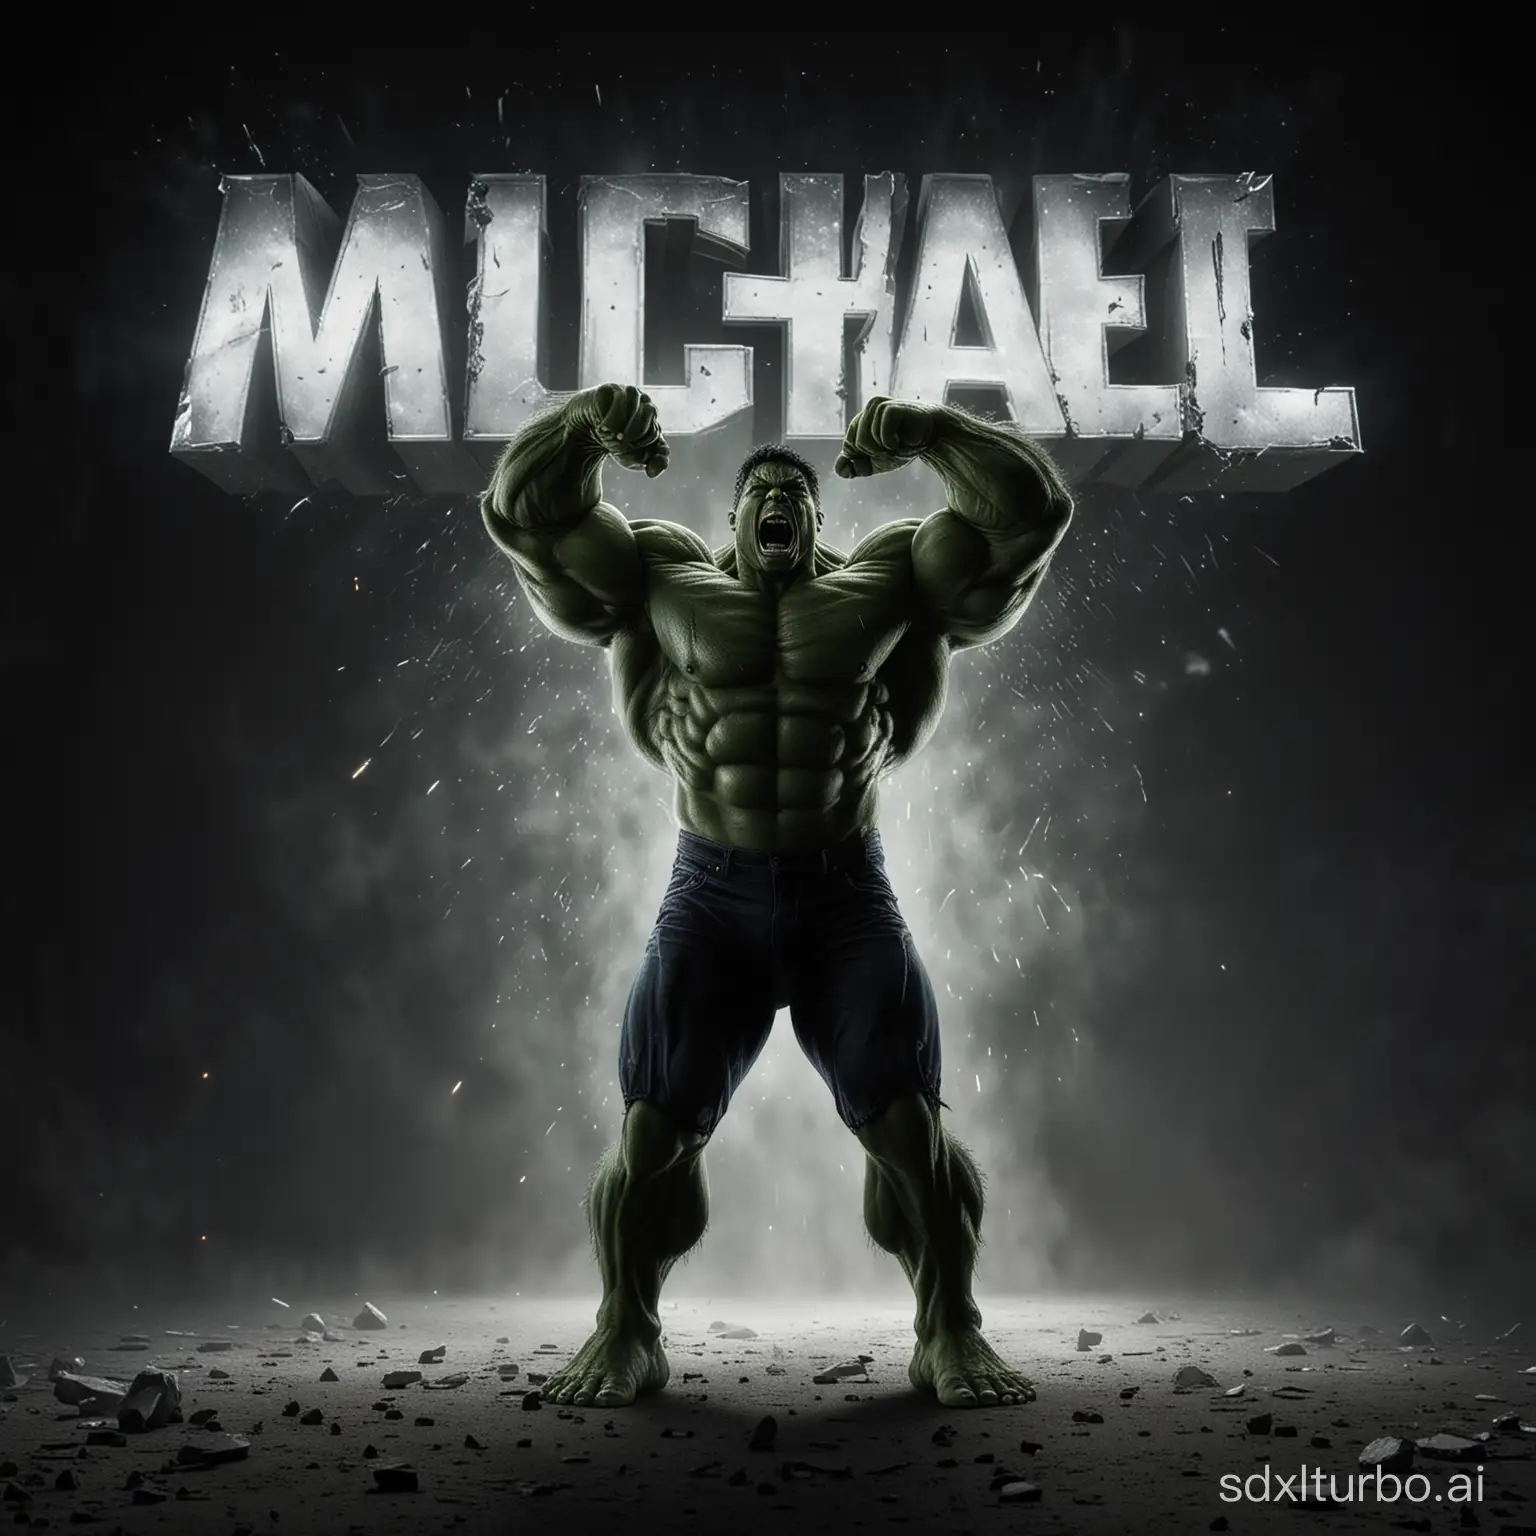  Text: "Michael" als leuchtende überschrift, ein mensch in form von hulk 
steht in der mitte des bildes und schaut hoch zu dem text, schreit, wutanfall, 4k, fotorealistisch, filmische Beleuchtung, schwarzer hintergrund